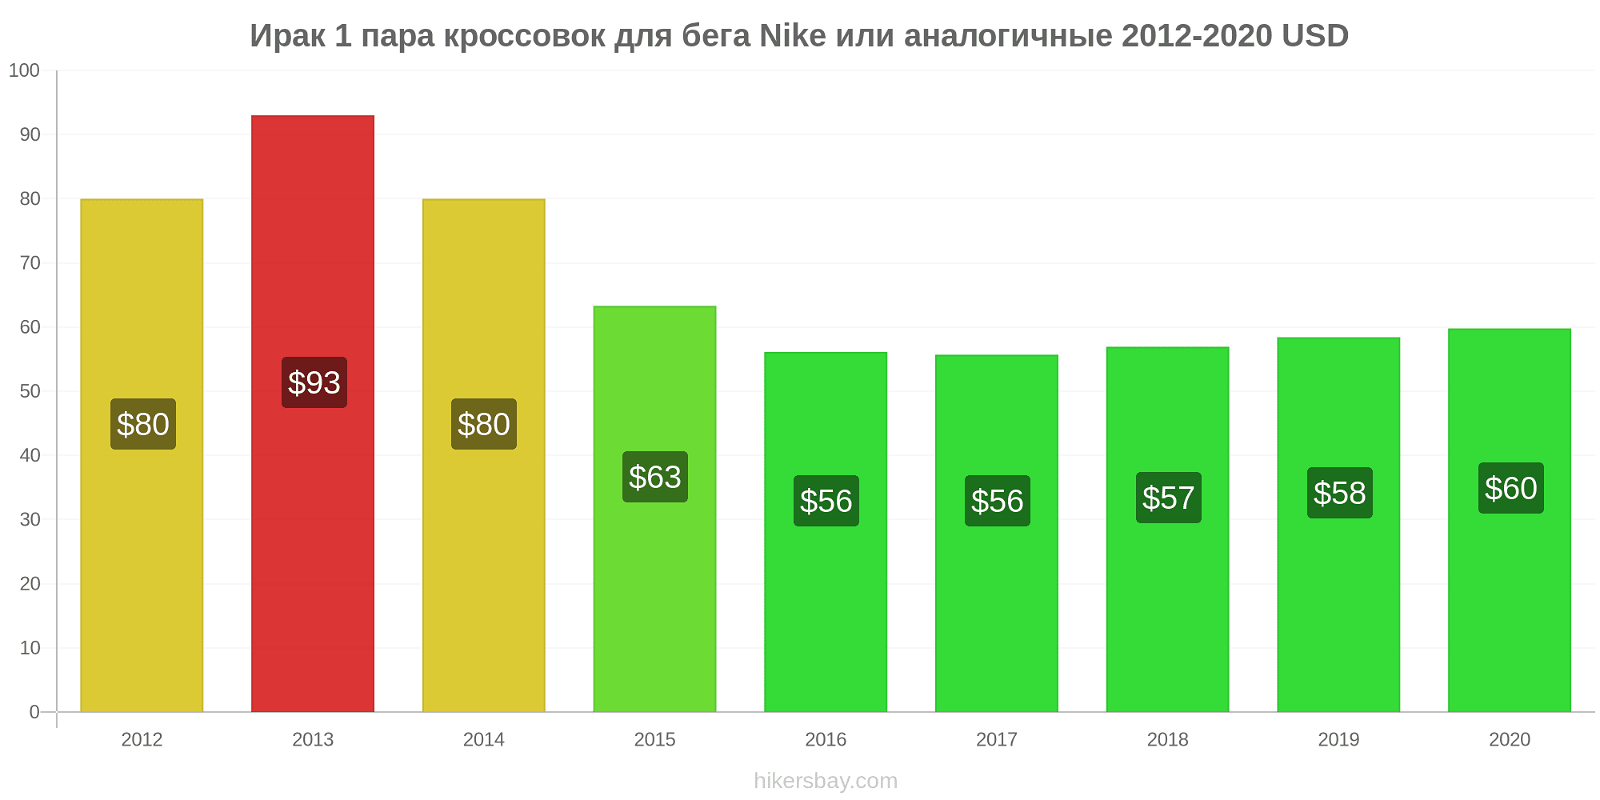 Ирак изменения цен 1 пара кроссовок для бега Nike или аналогичные hikersbay.com